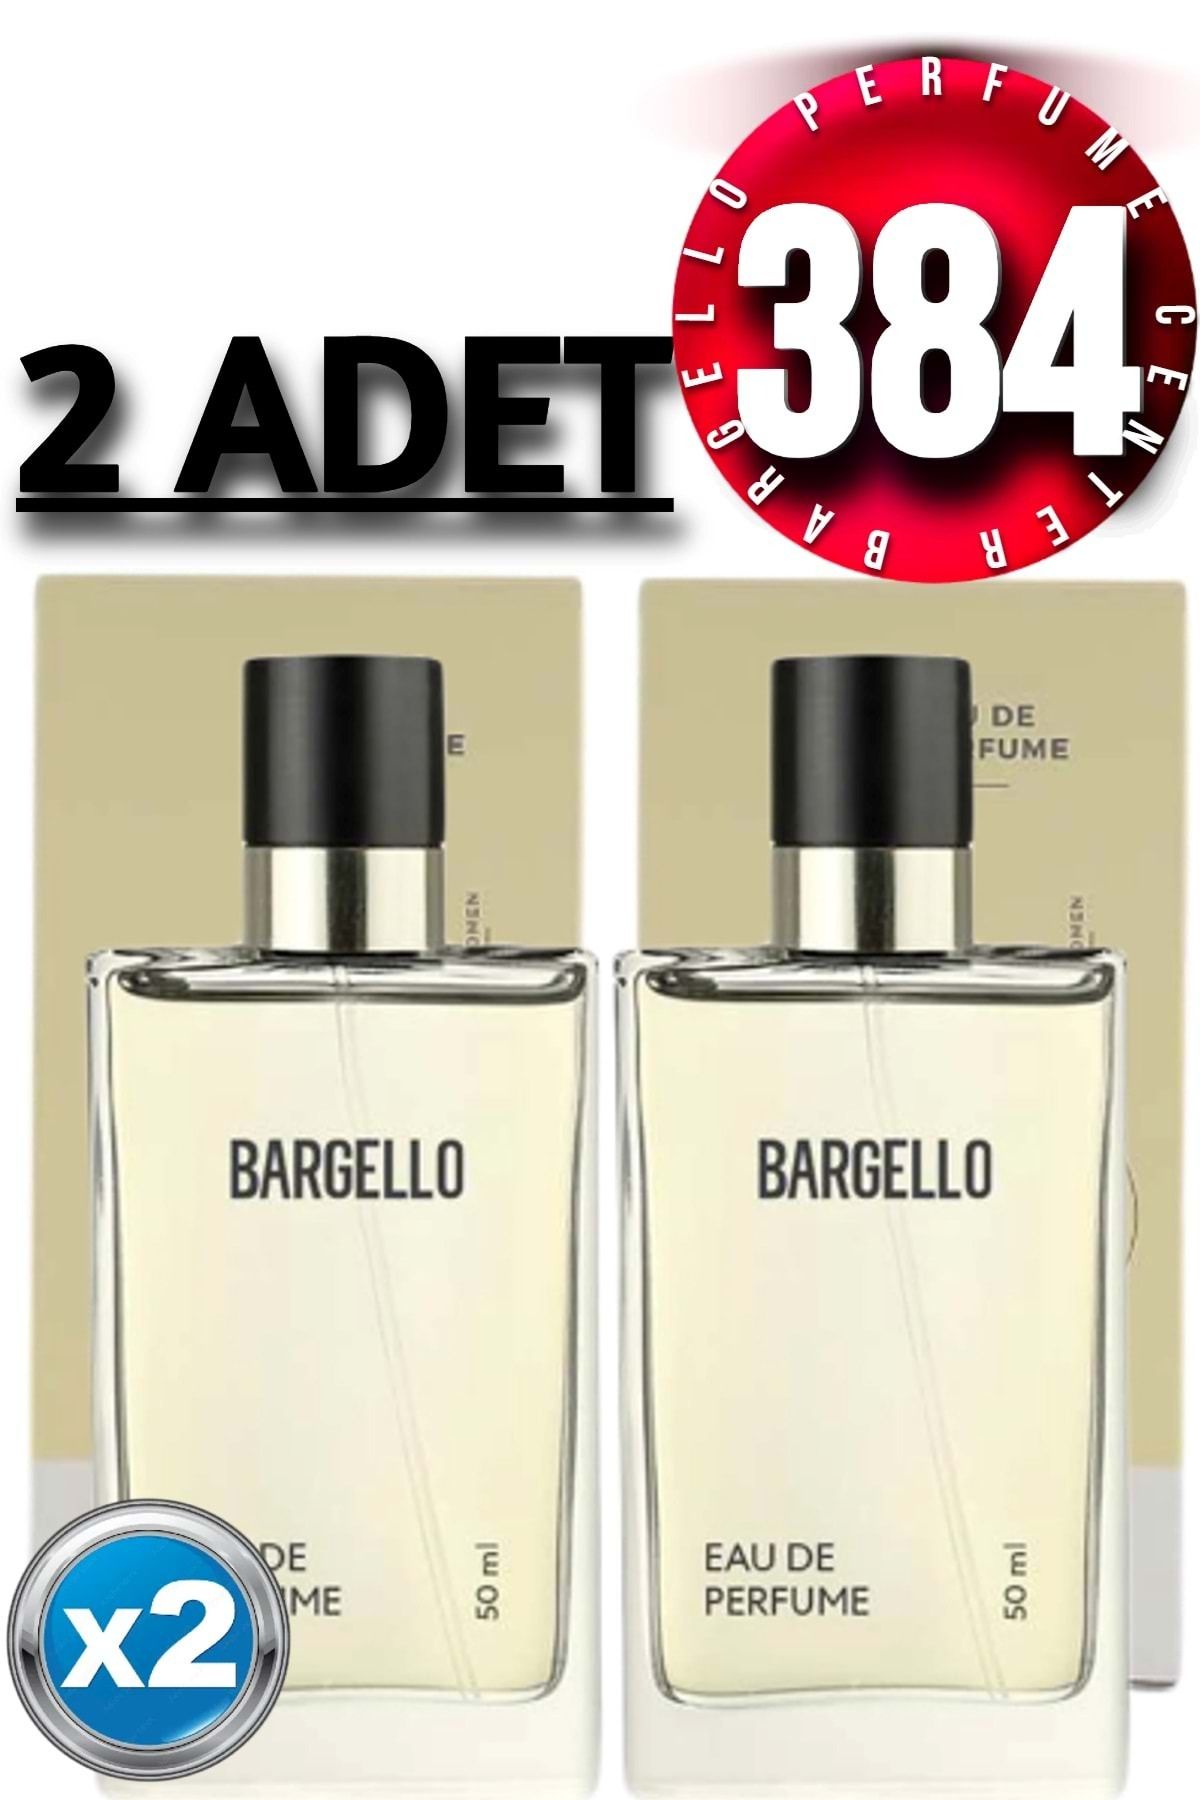 Bargello 384x2(2 ADET) Kadın Parfüm Floral 50 ml Edp